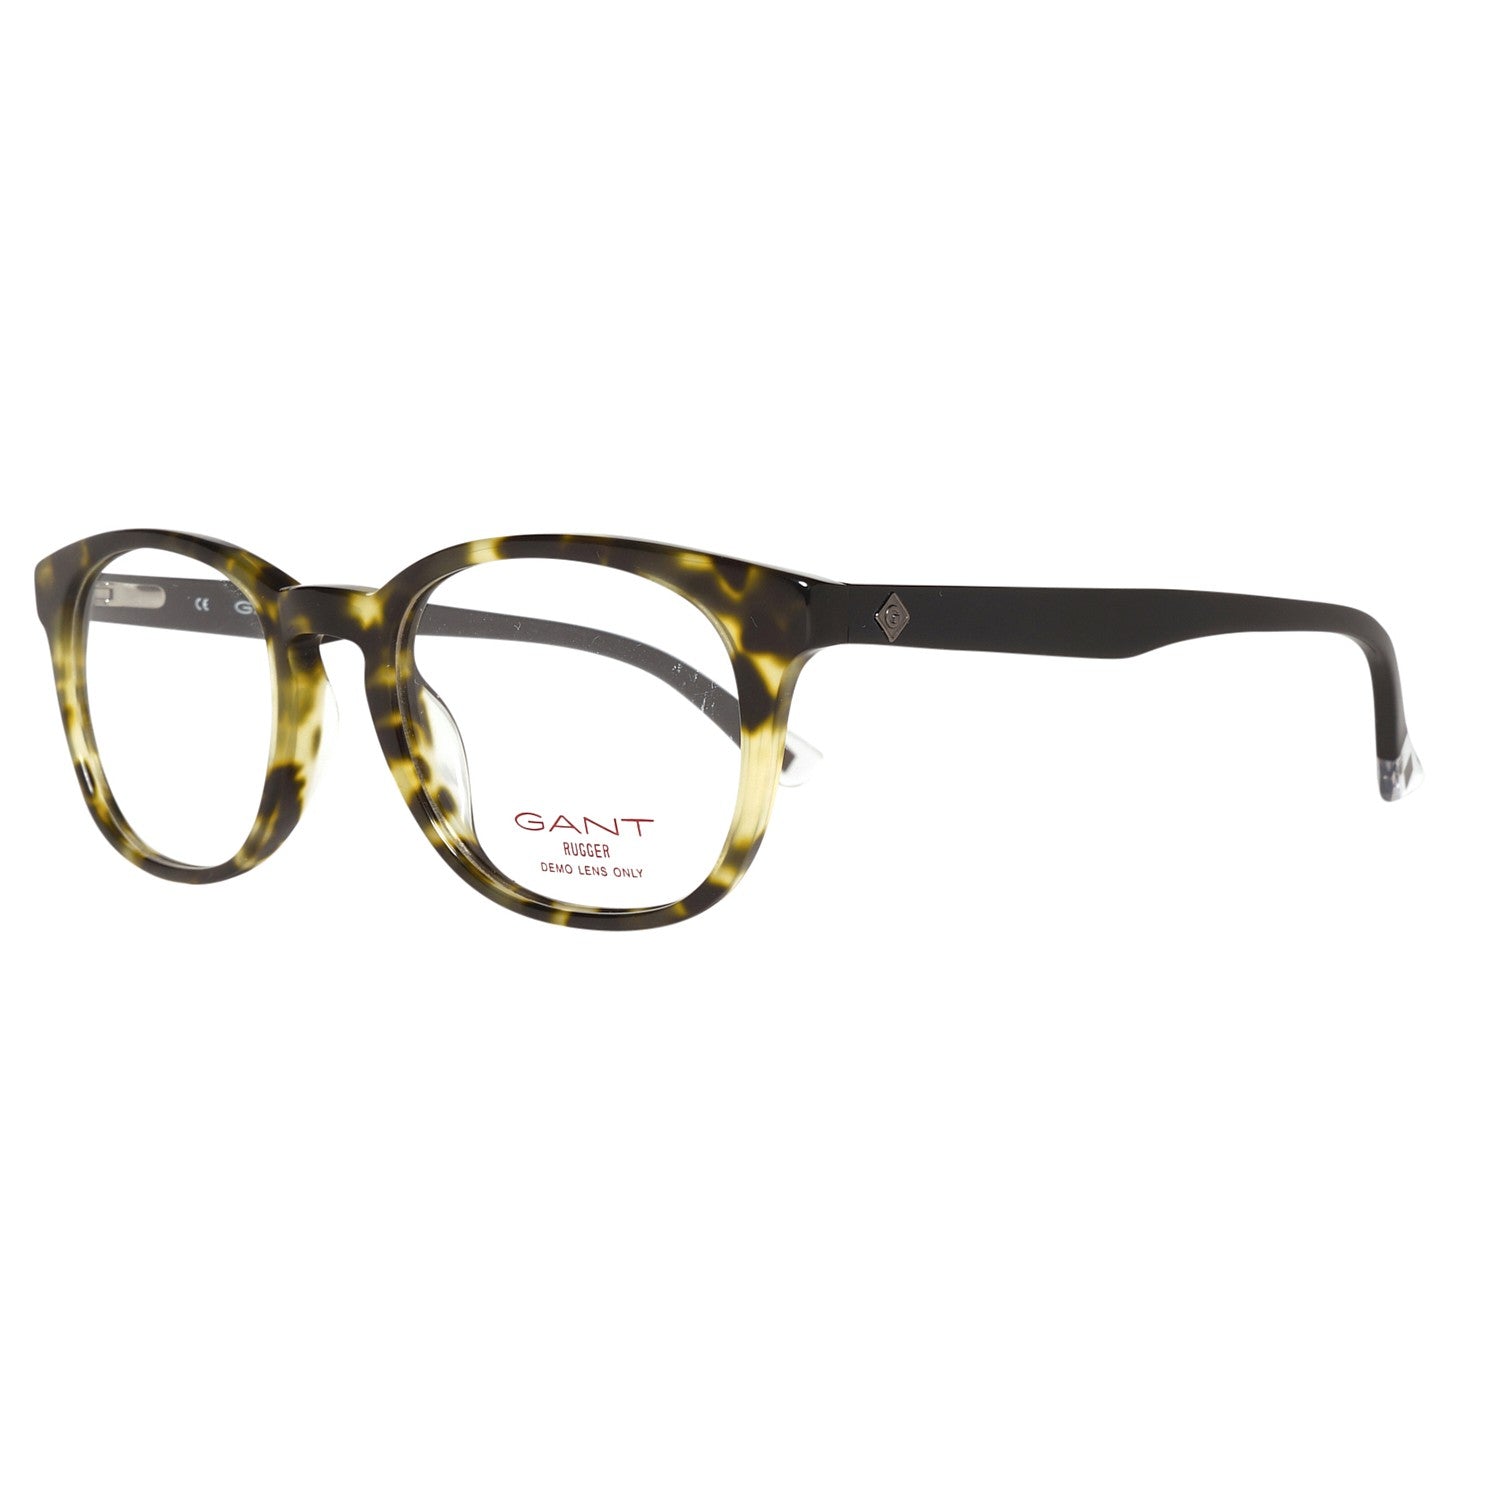 Gant Frames Gant Glasses Frames GRA088 K83 47 | GR RUFUS LTO 47 Eyeglasses Eyewear UK USA Australia 